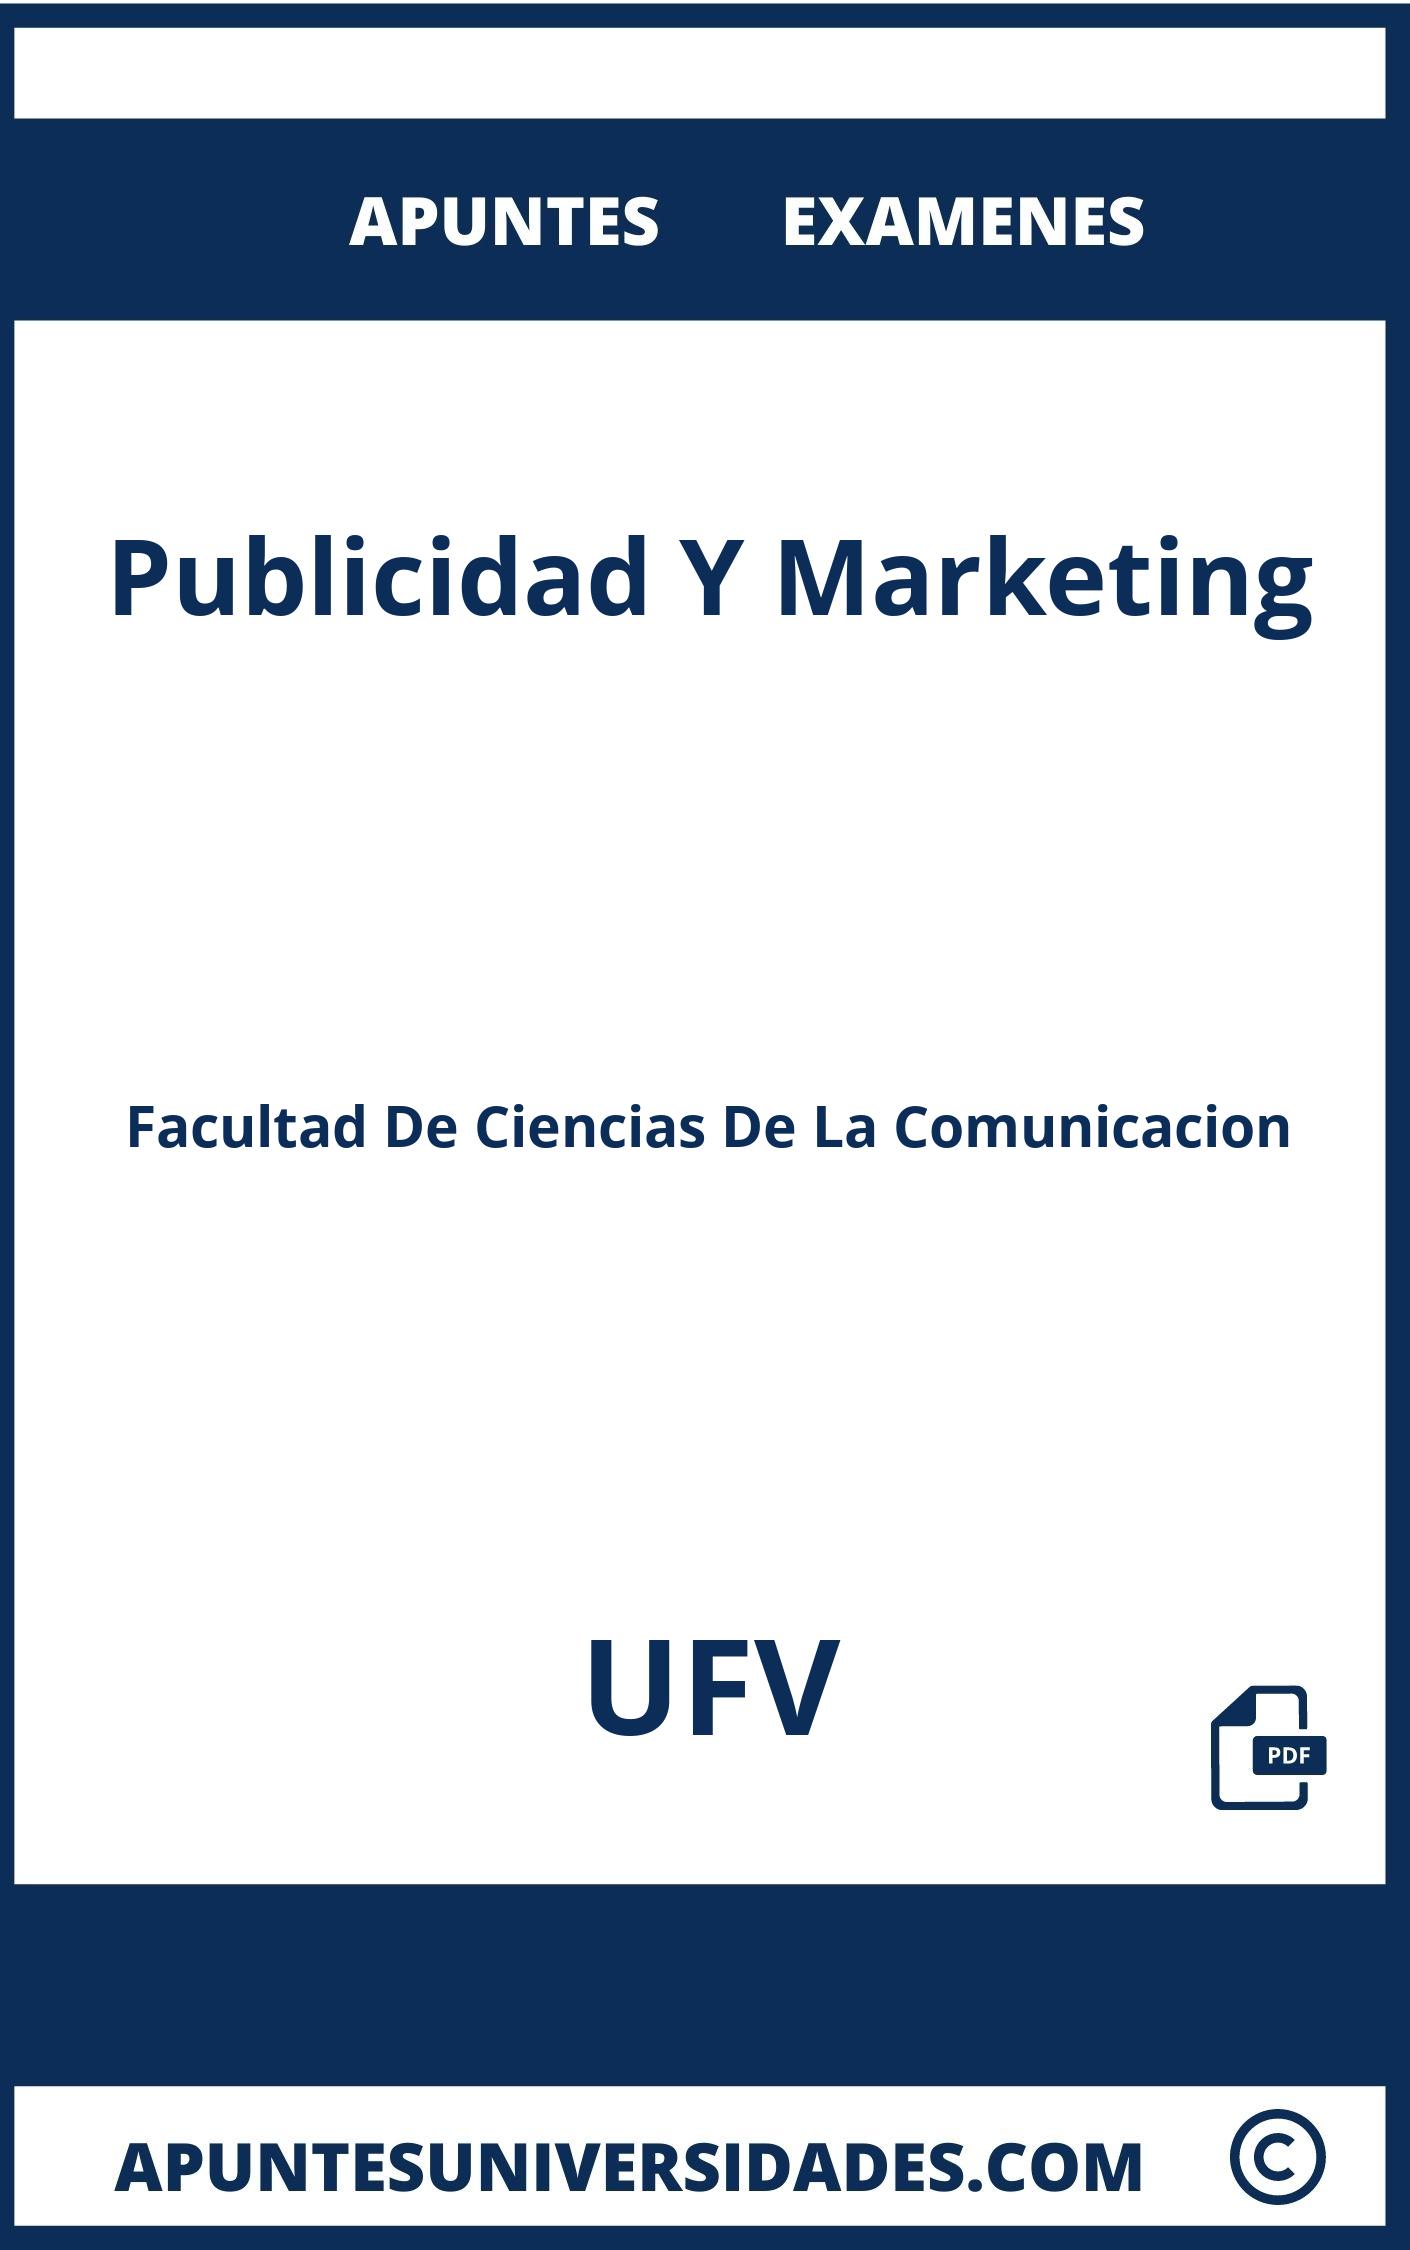 Apuntes y Examenes Publicidad Y Marketing UFV